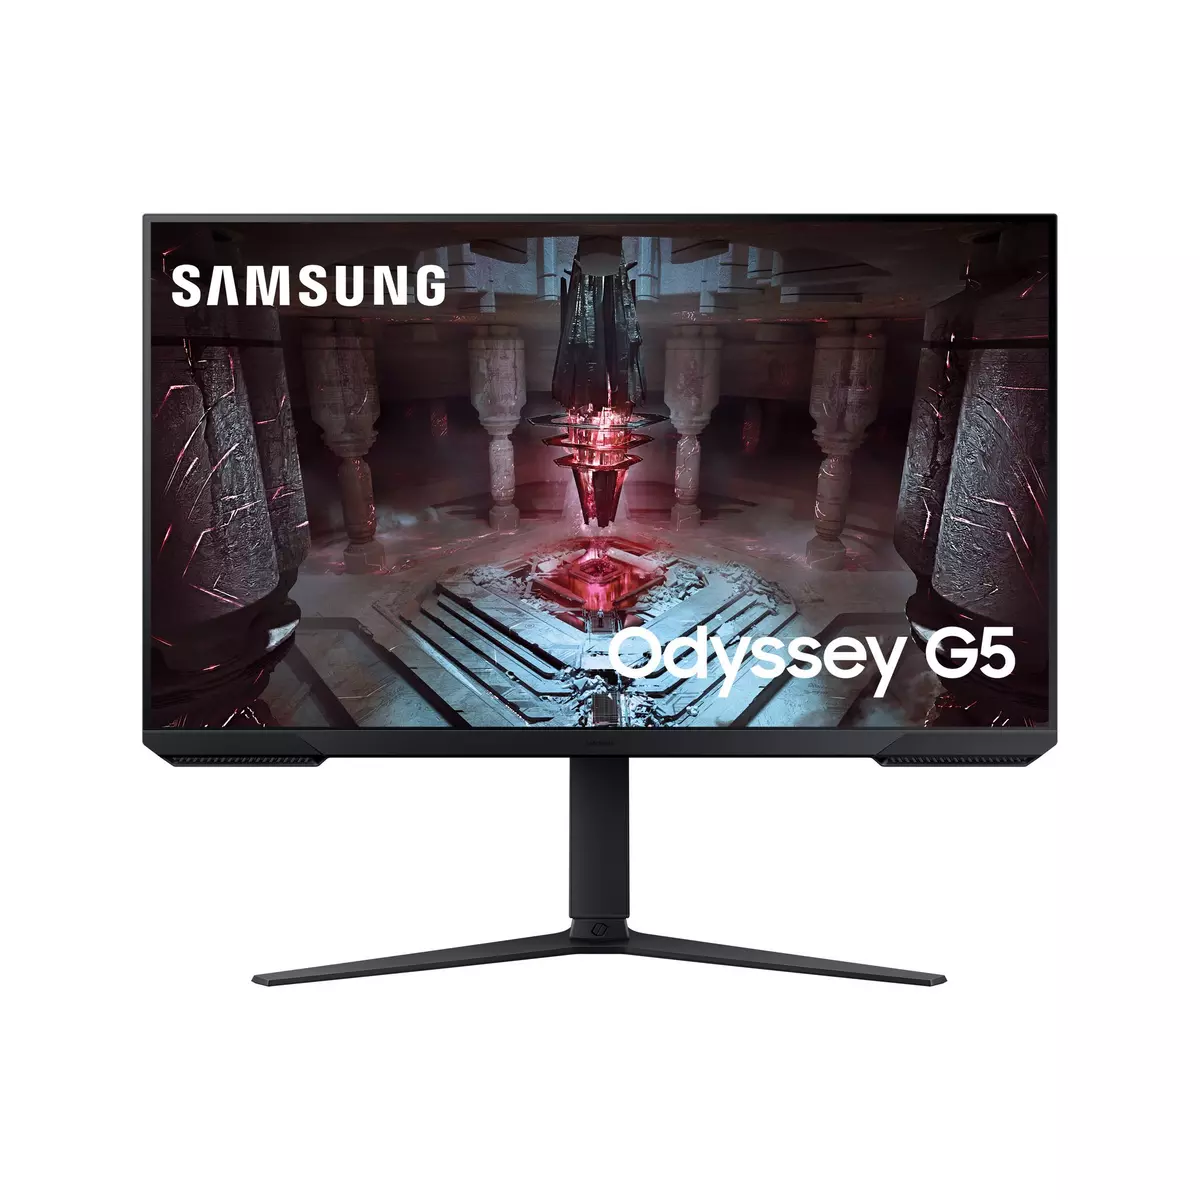 L'écran PC gamer Samsung de référence est en promo ! 